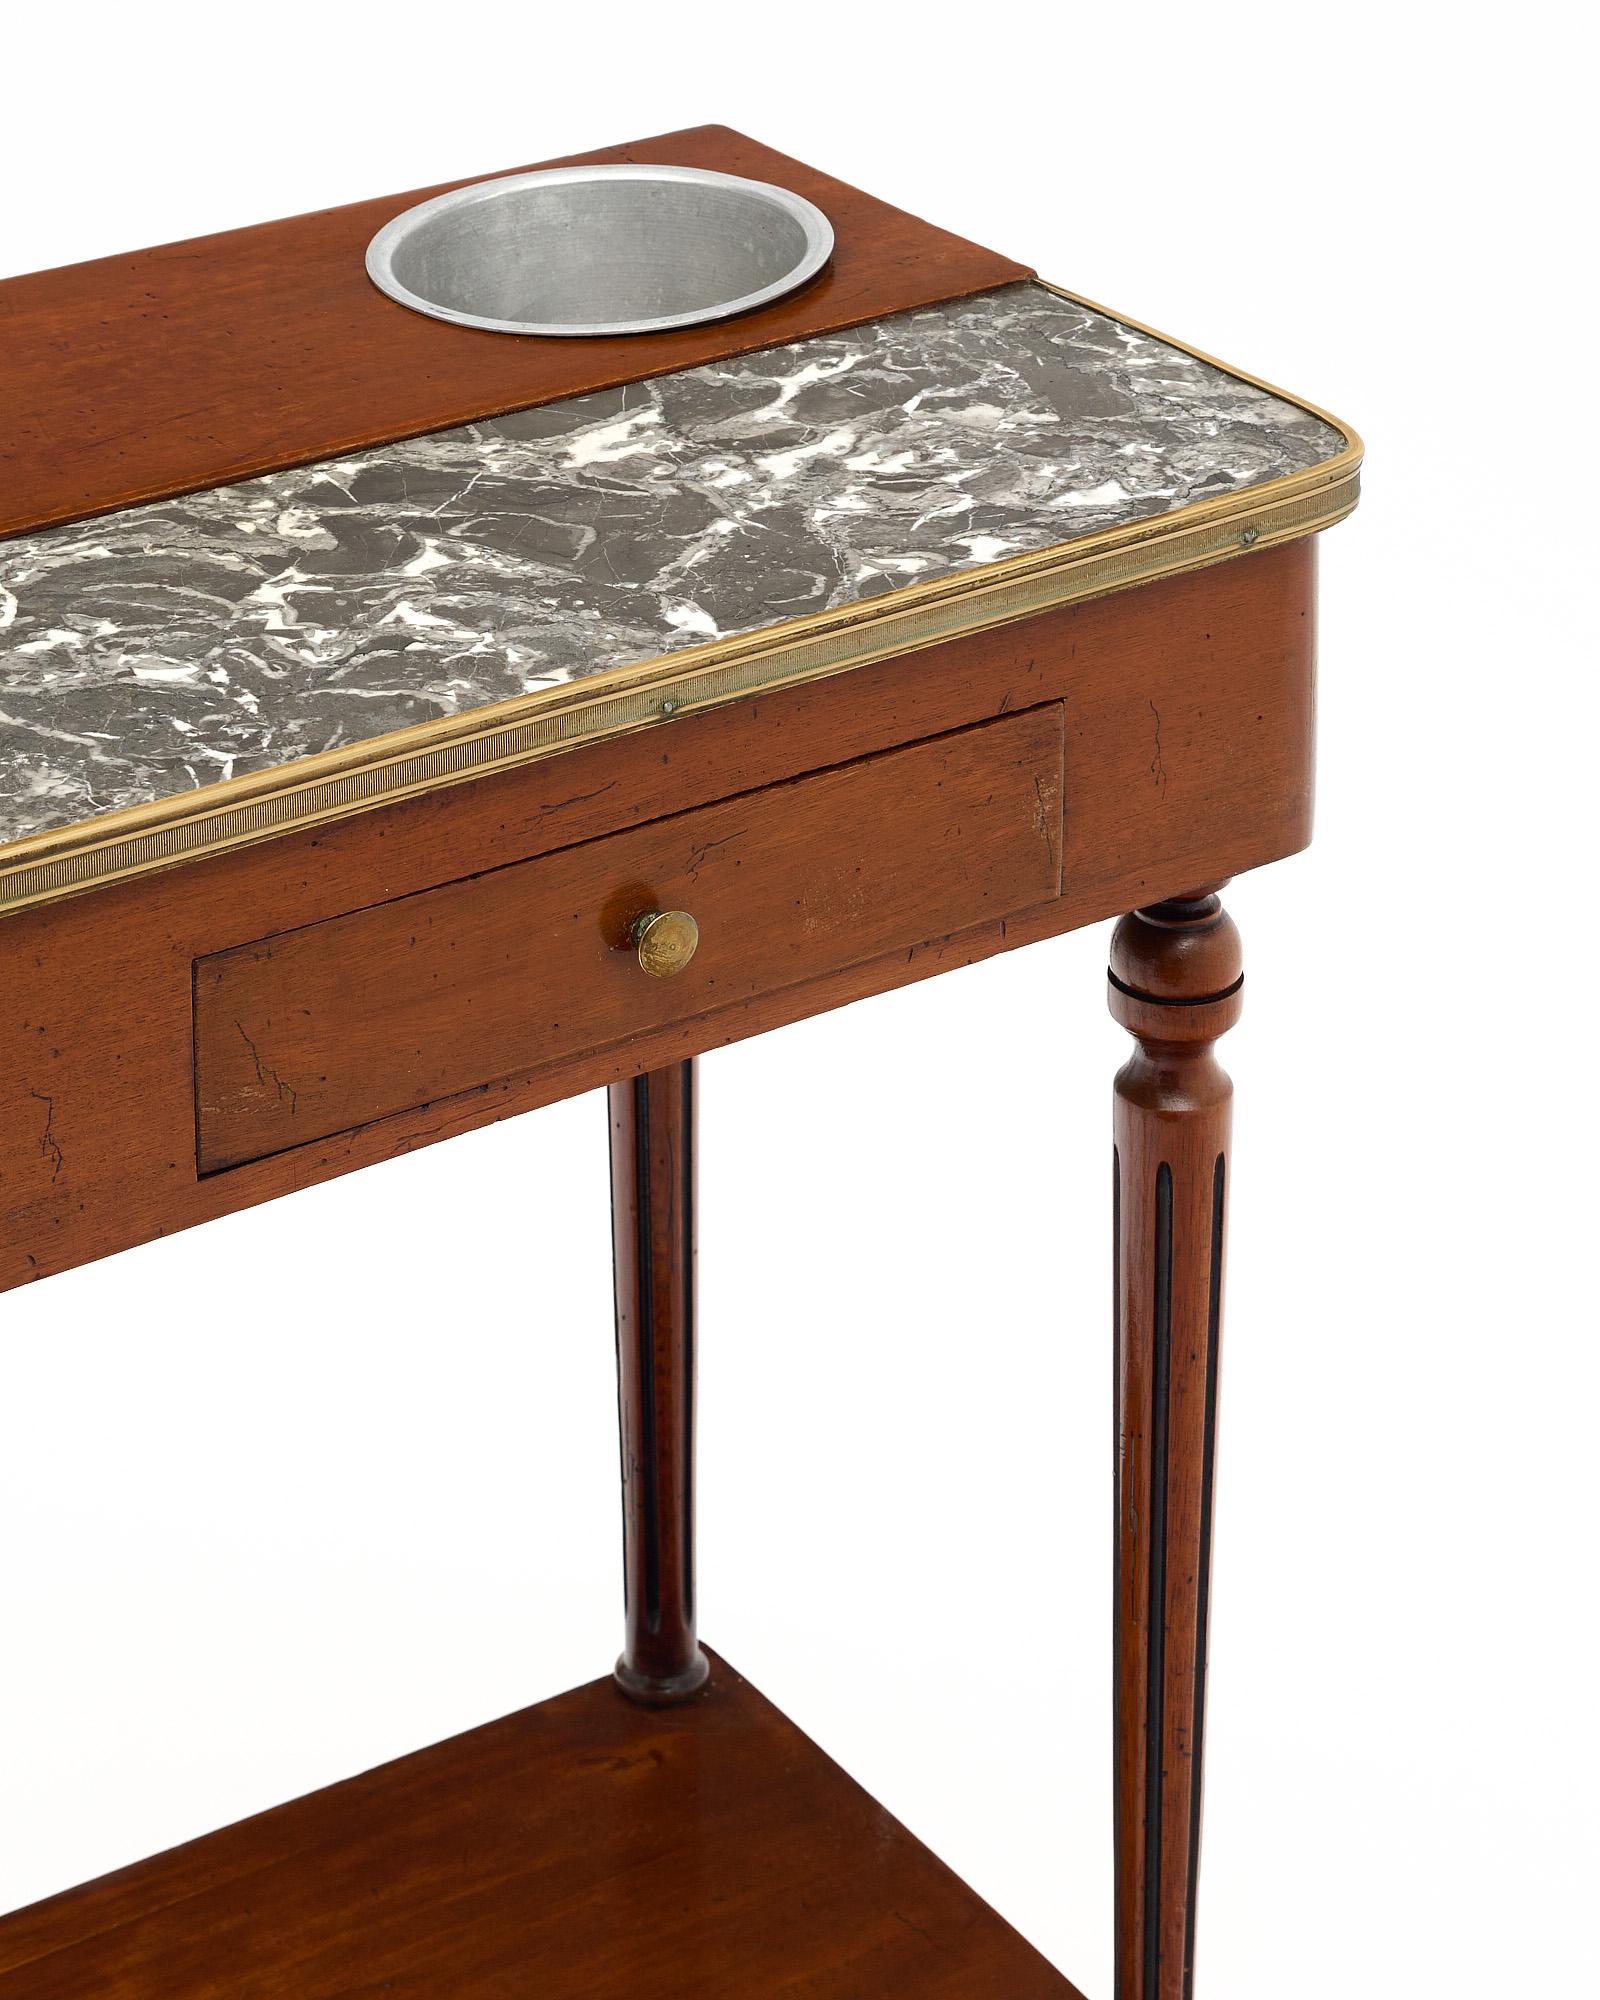 Table Rafraichissoir de France de style Louis XVI. Cette magnifique table d'appoint antique est dotée de deux porte-verres à champagne en métal et d'un petit tiroir pour les accessoires de bar. L'acajou a reçu une finition lustrée à la française. Il